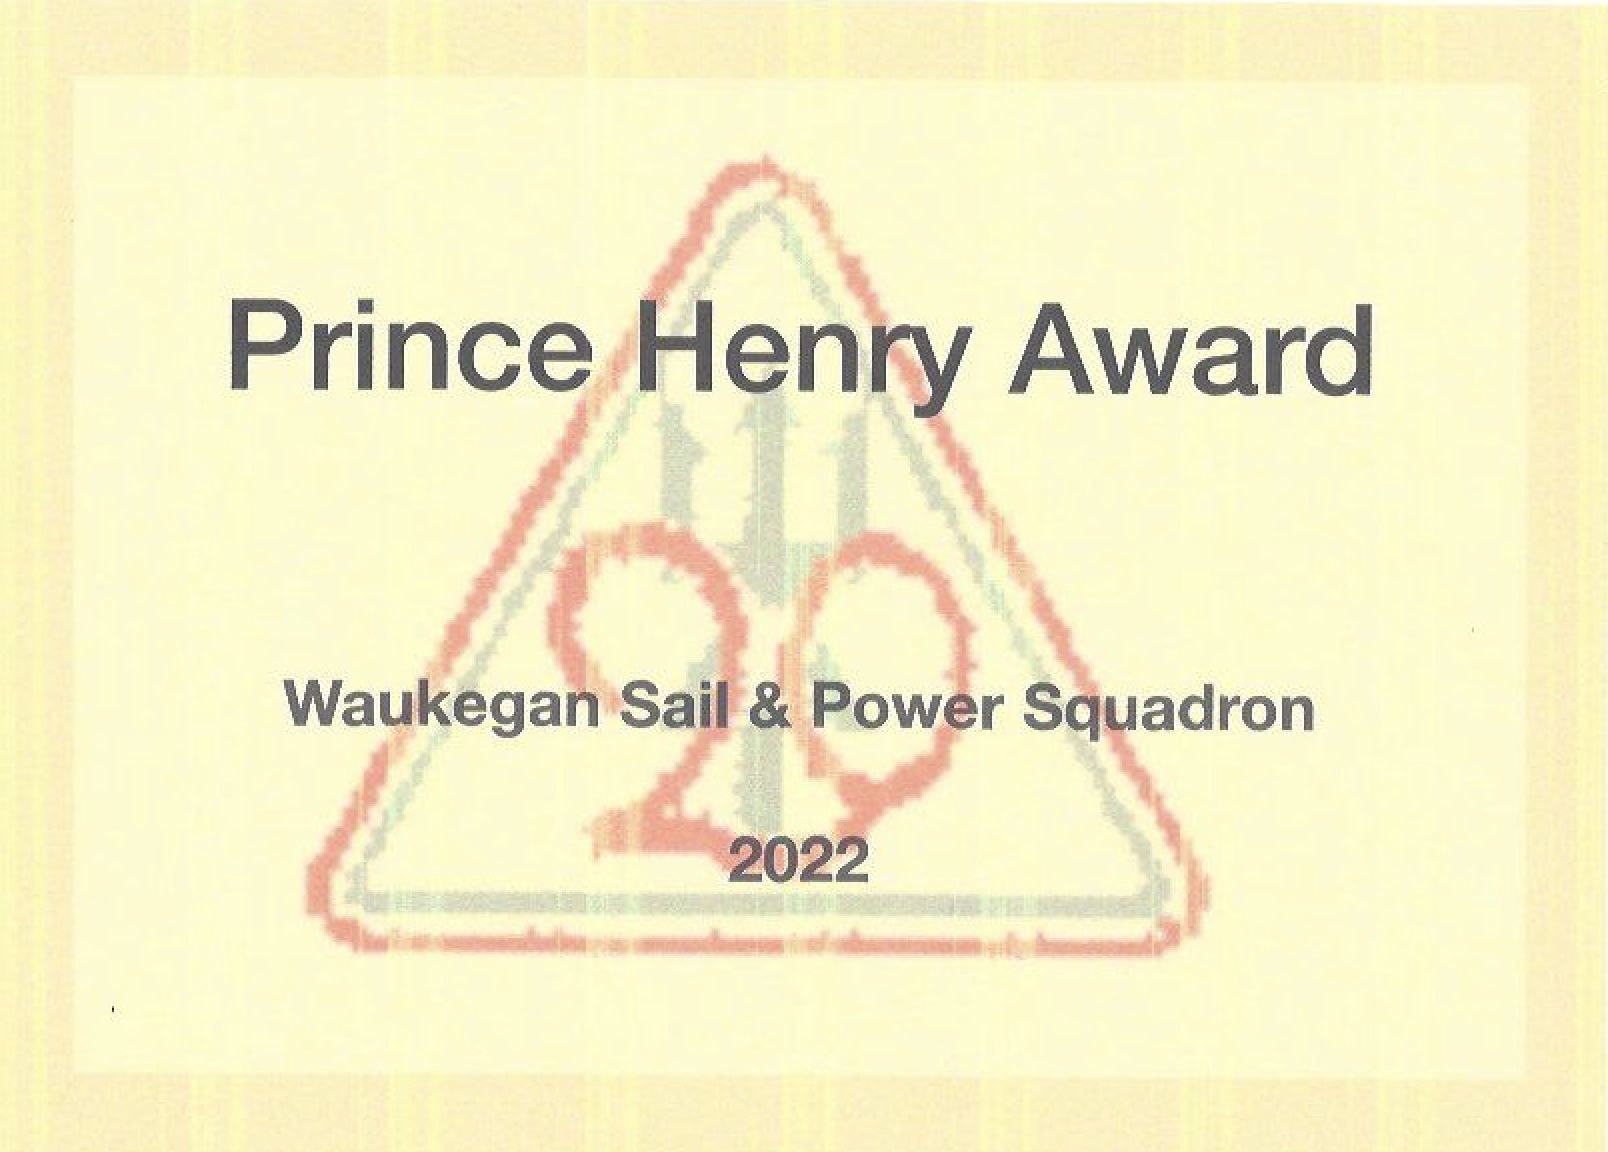 Prince Henry Award 2022